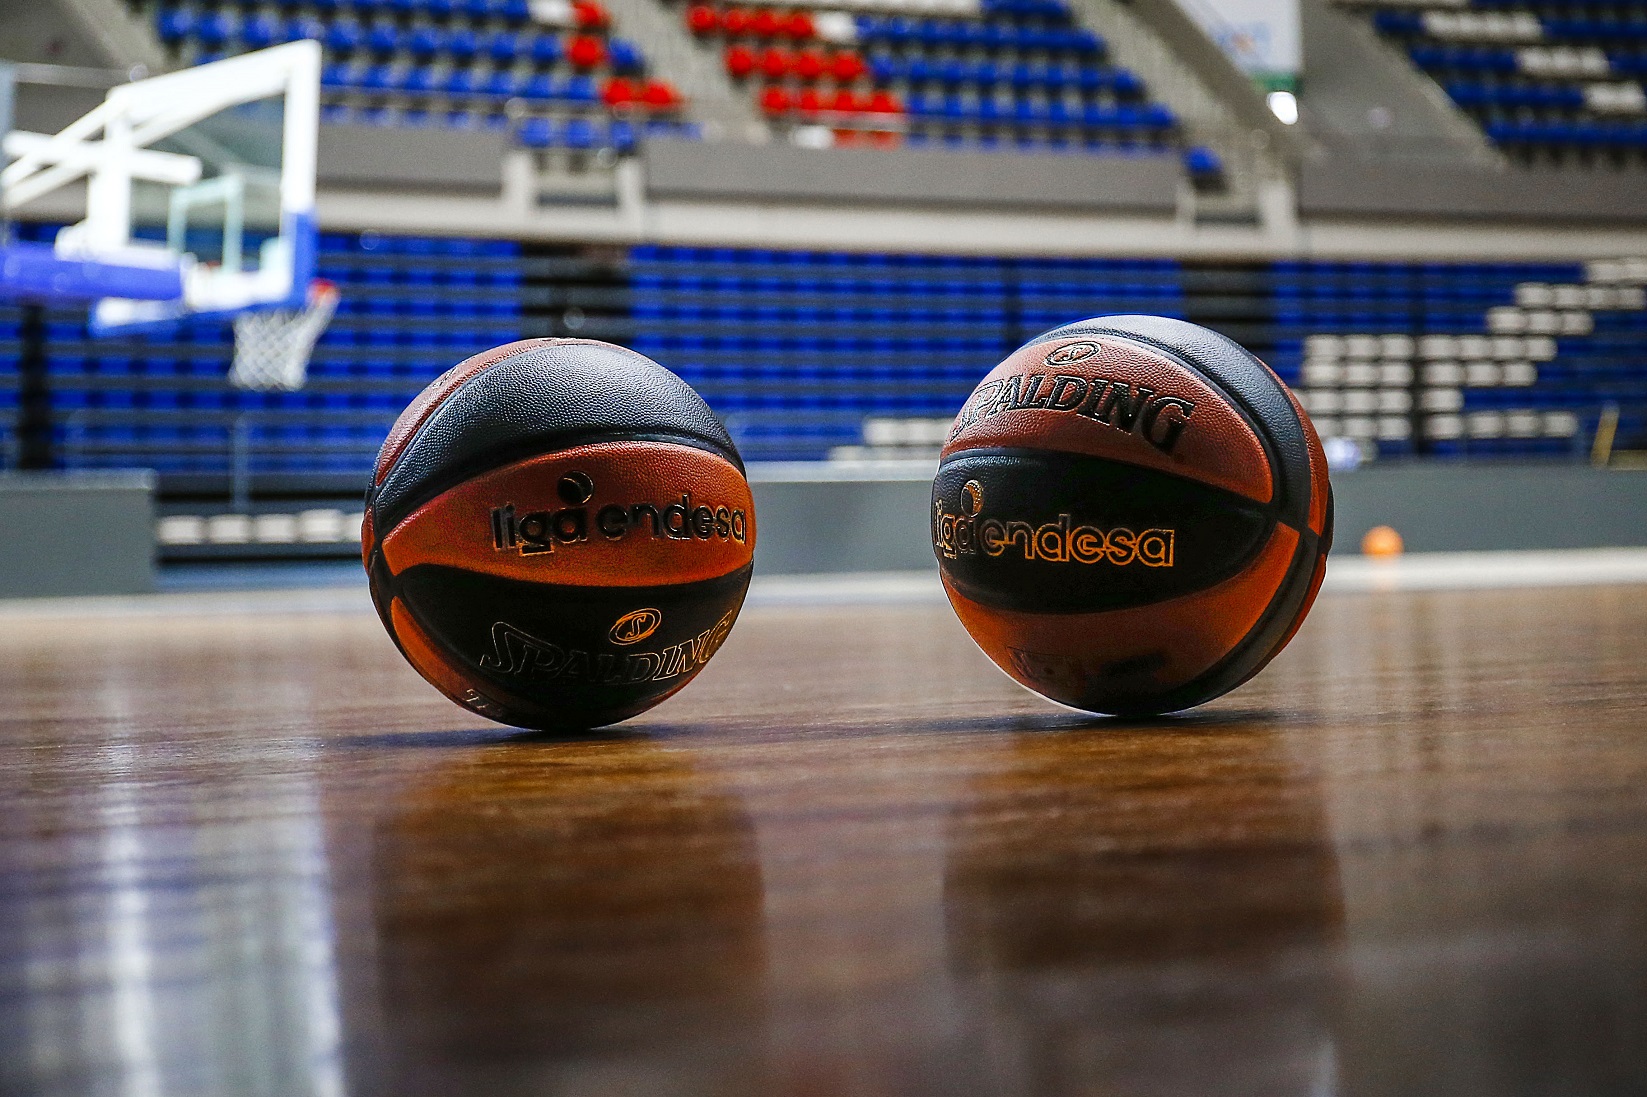 Aplazado el Lenovo Tenerife-Valencia Basket de la semana que viene